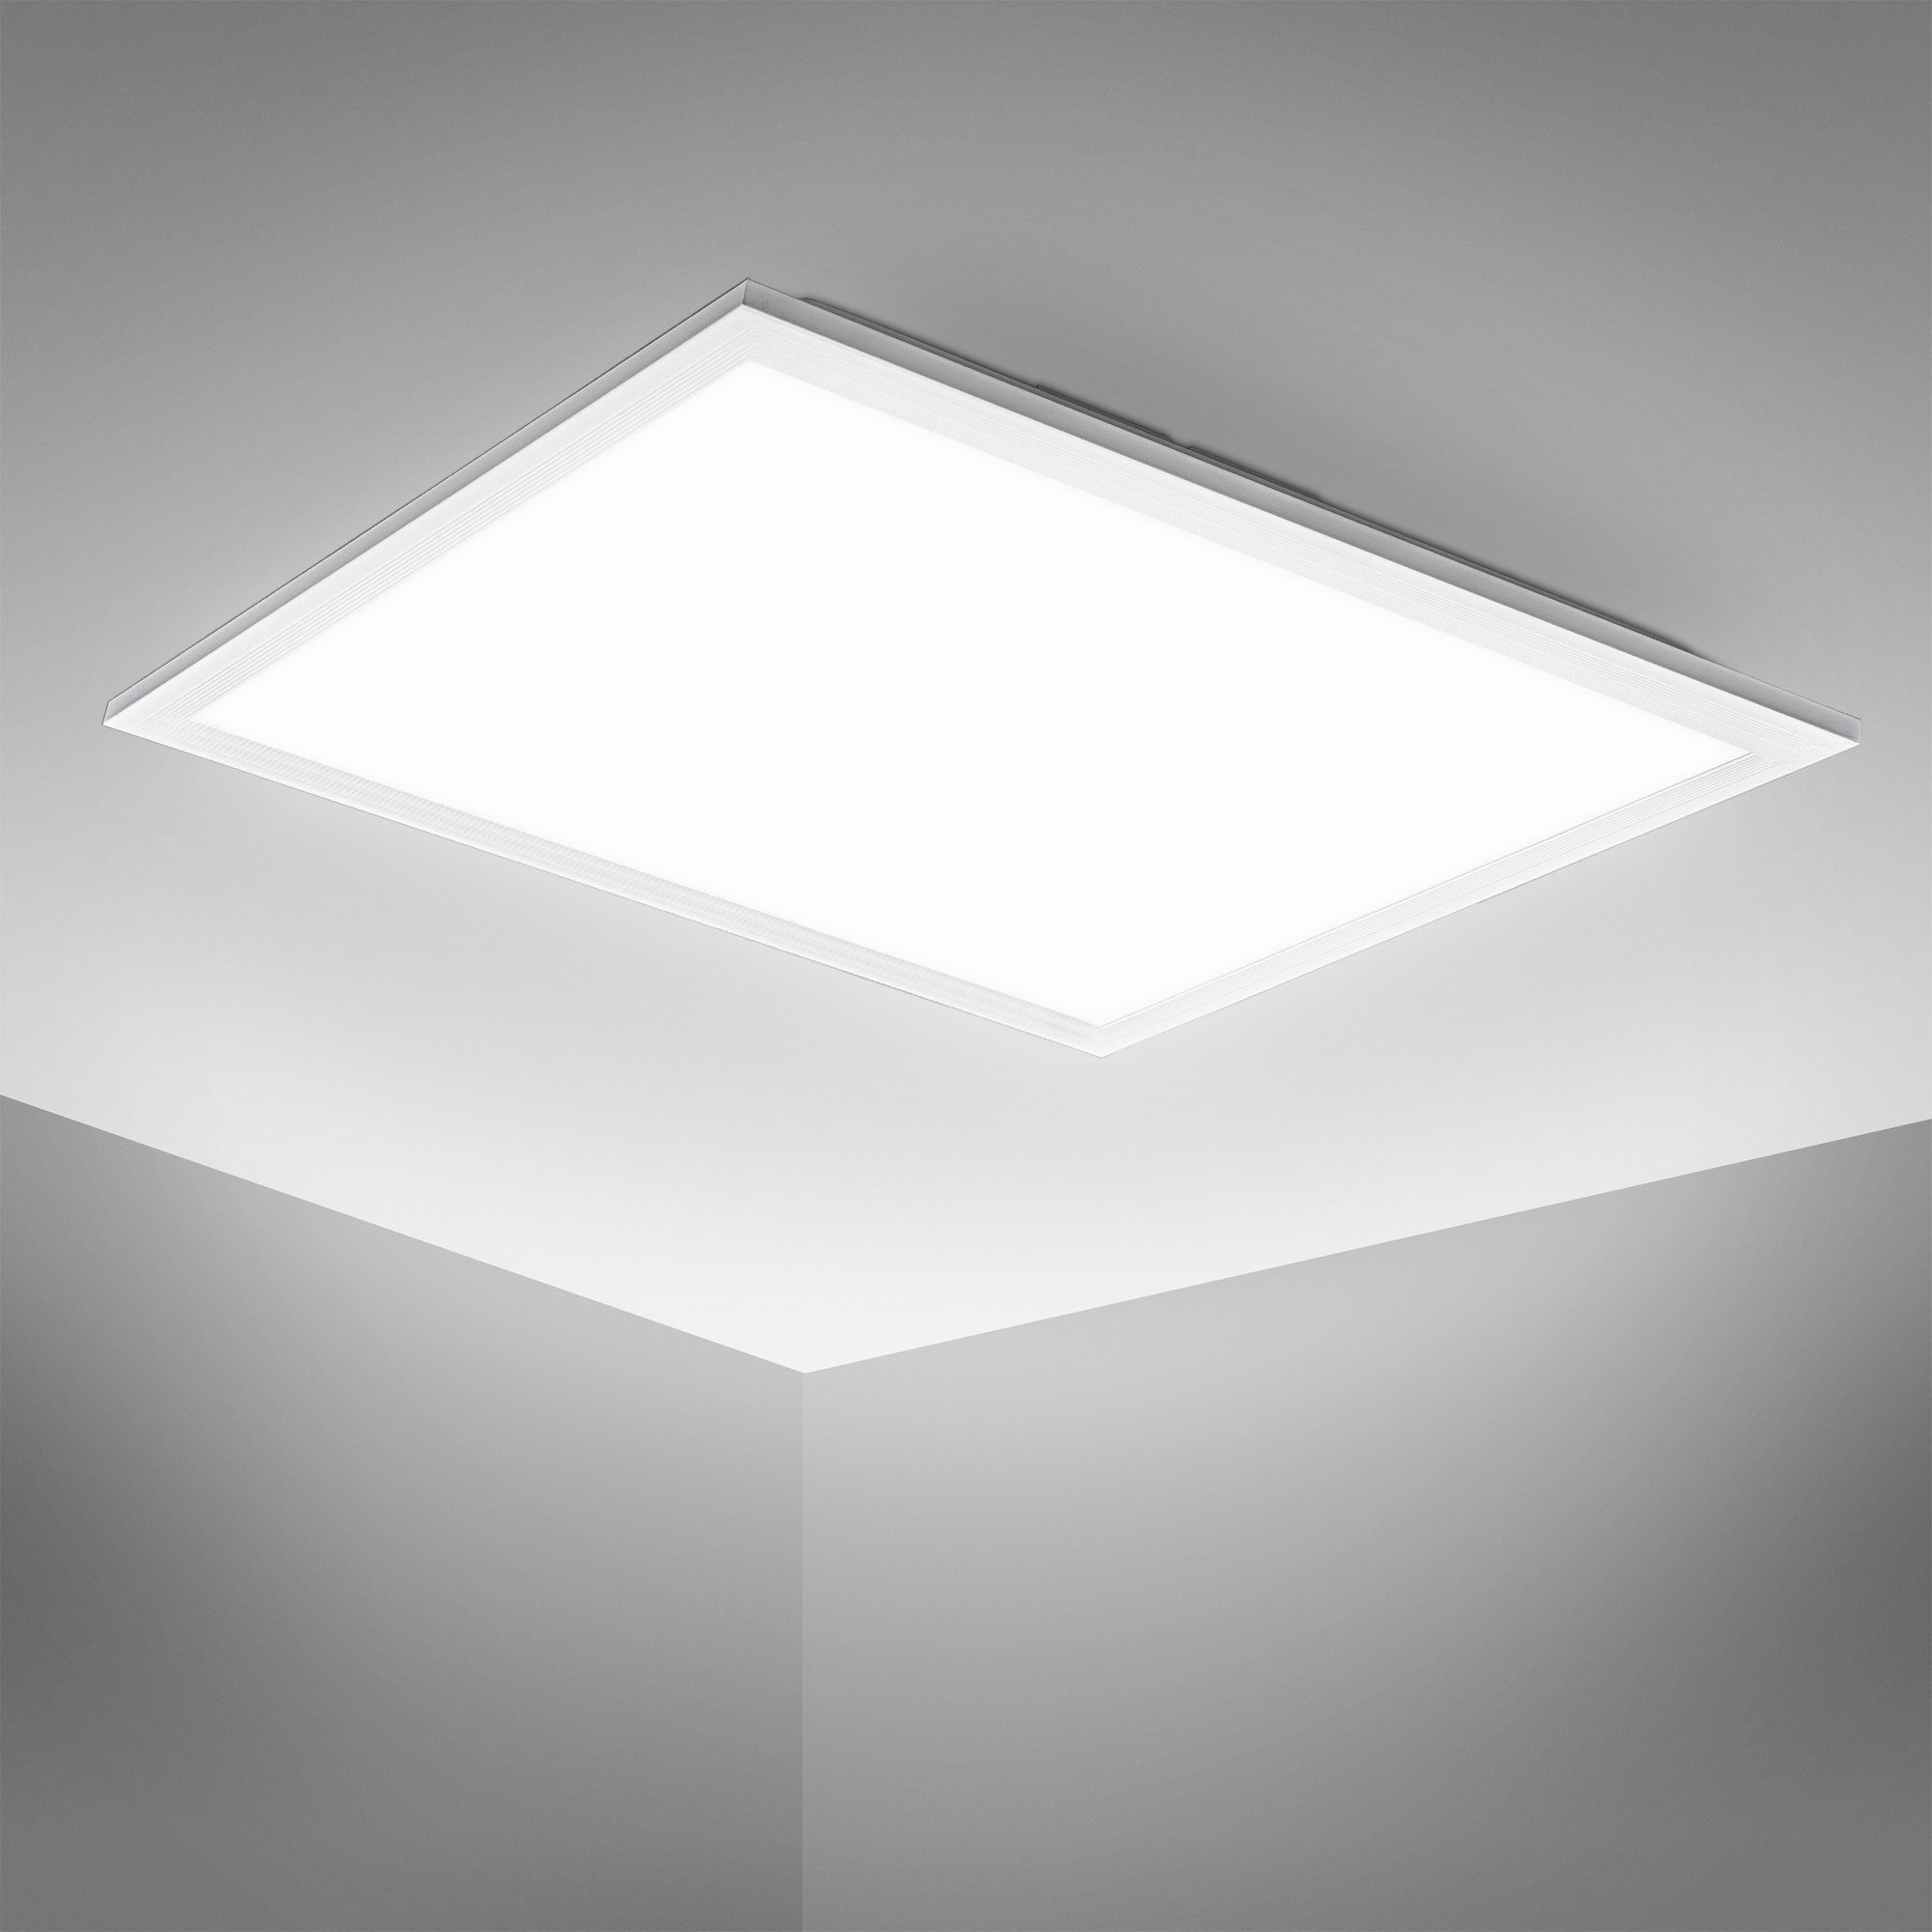 B.K.Licht LED Deckenleuchte BK_DP1325 LED Panel, Weiß, 29,5 x 29,5 cm,  4.000K neutralweißes Licht, LED fest integriert, Neutralweiß, Deckenlampe  5,5 cm flach, 12W,